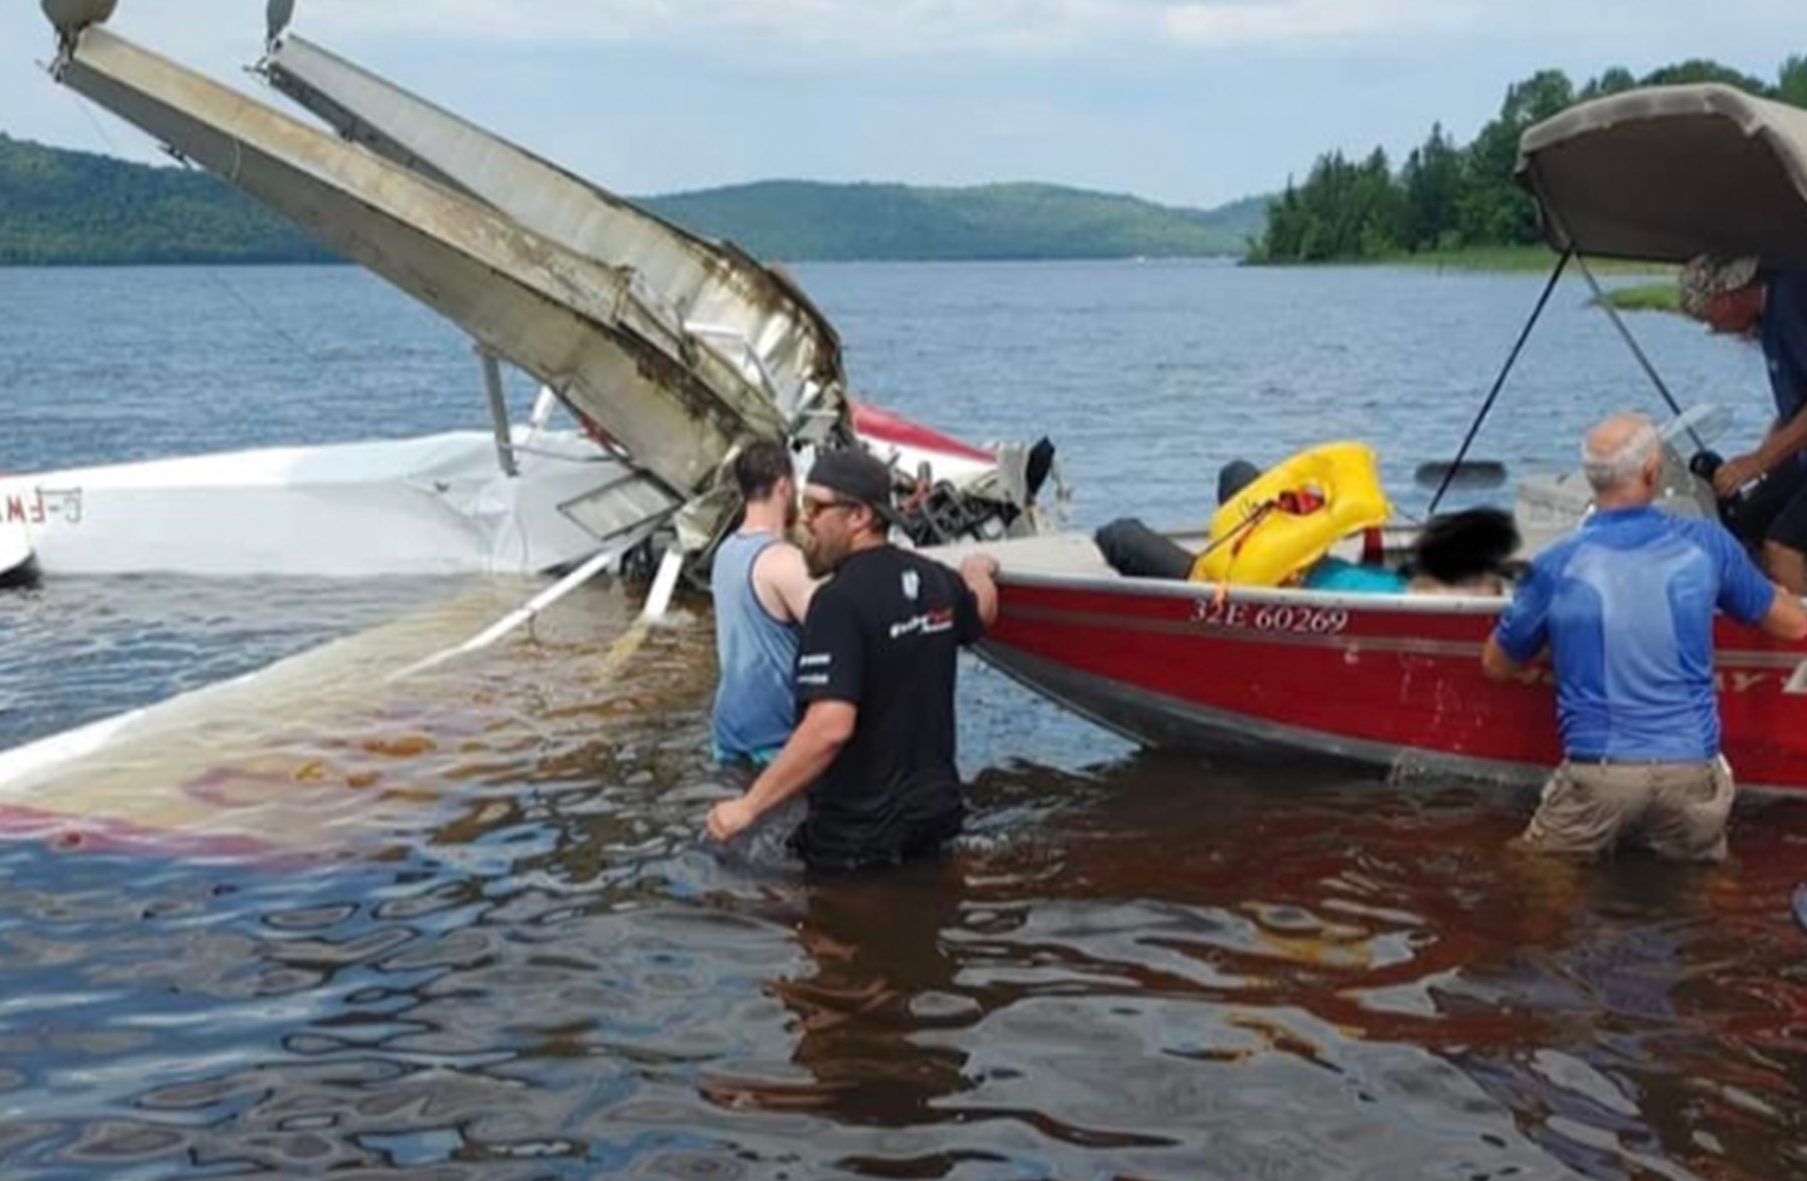 Seaplane crash in Quebec lake